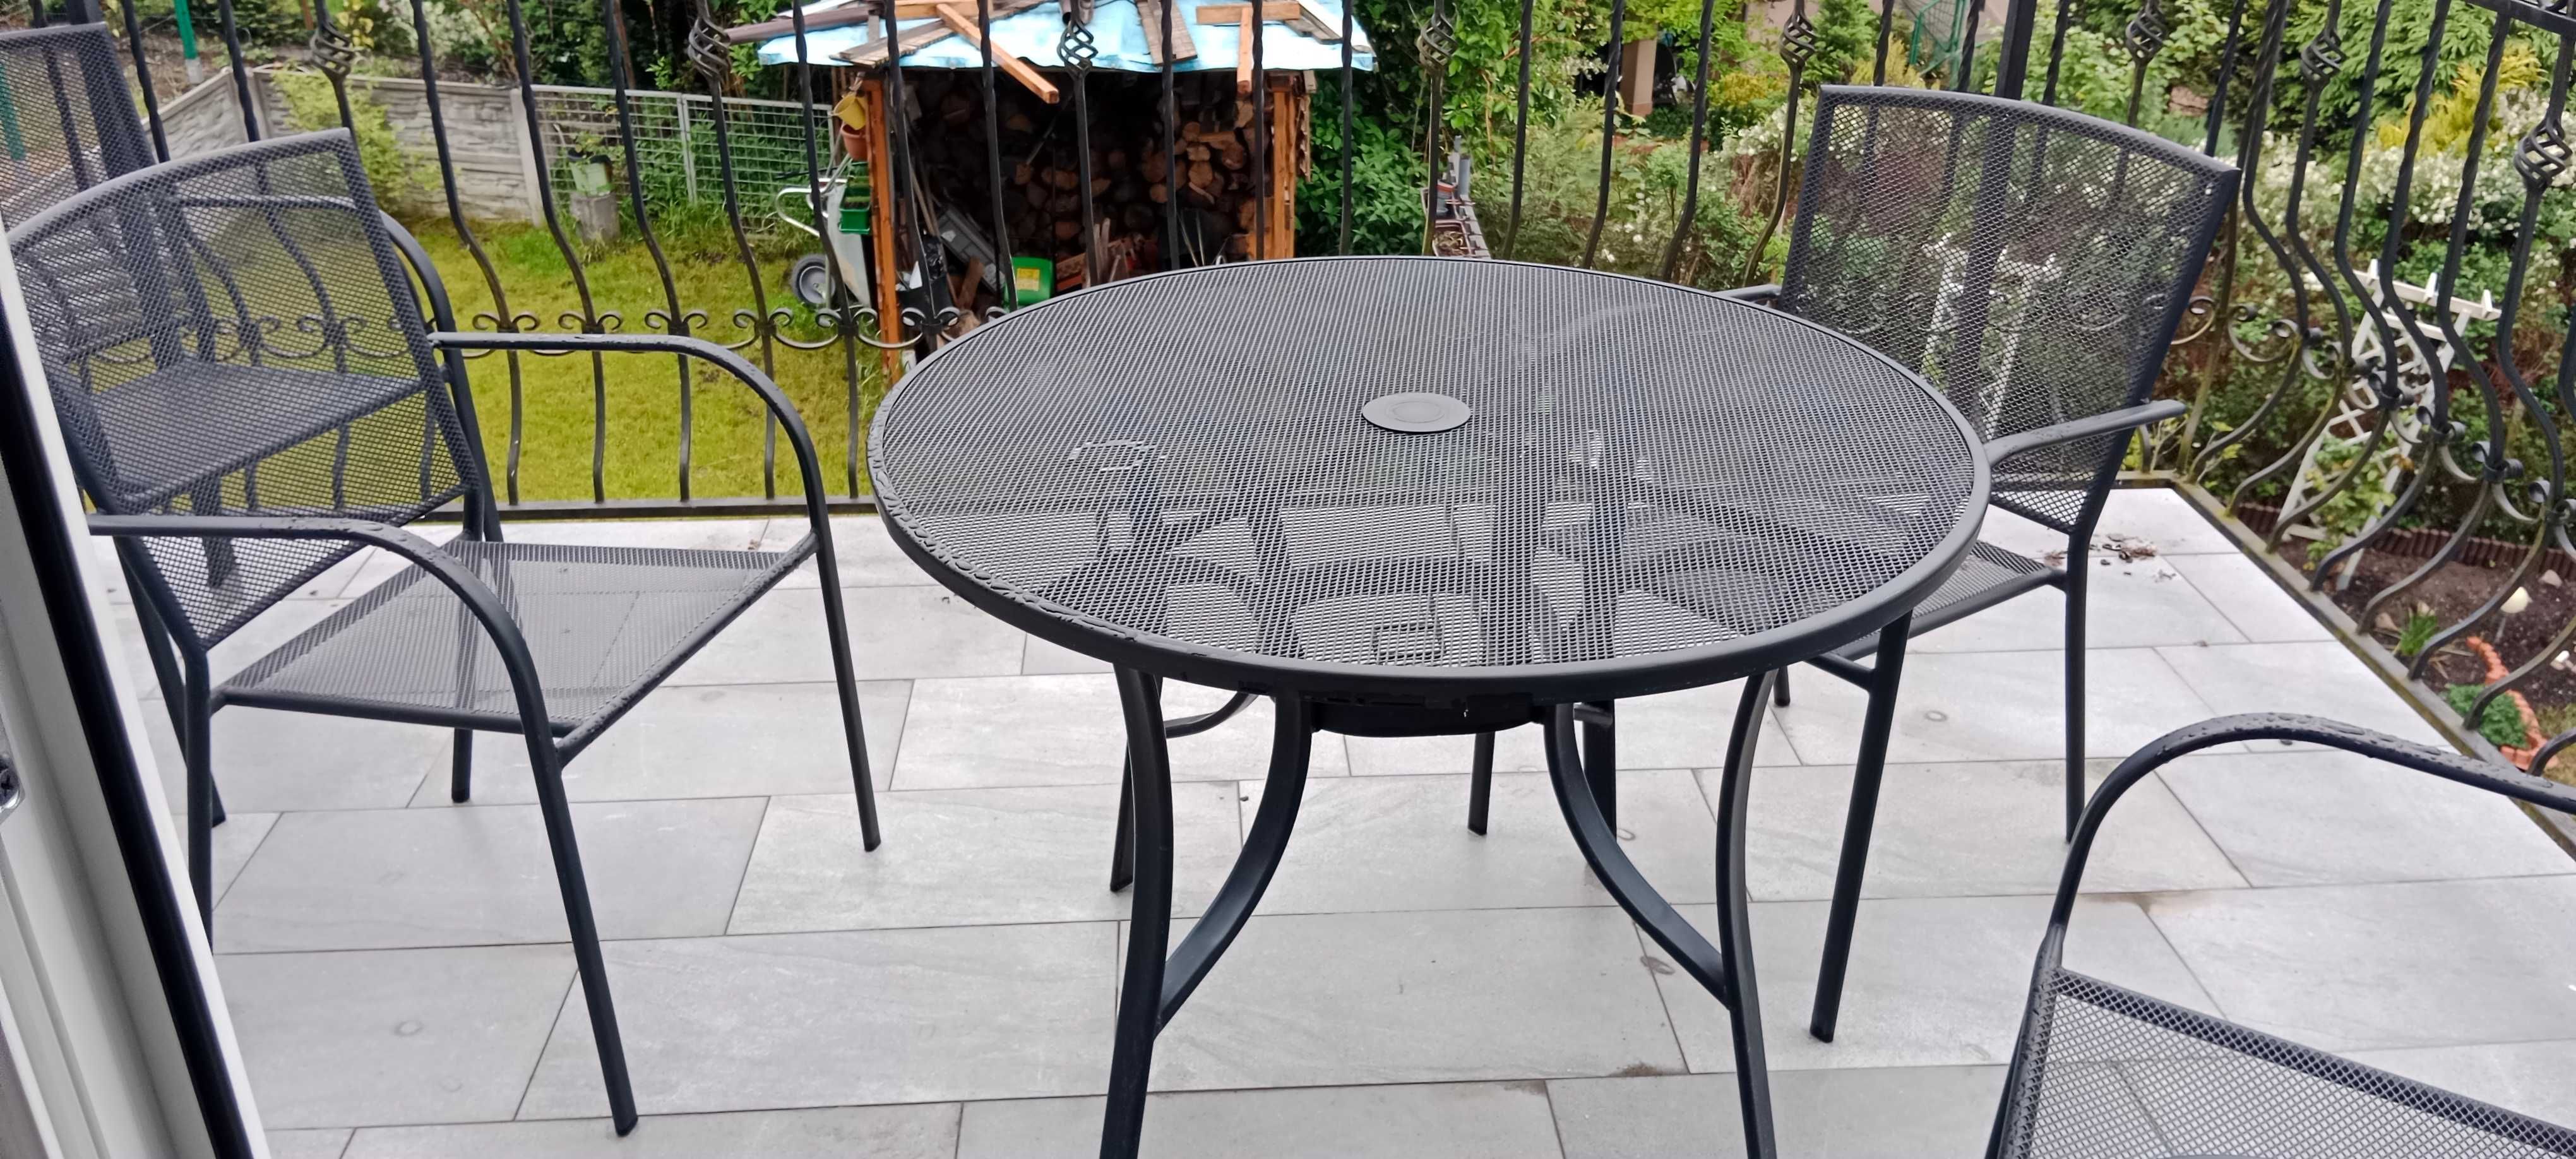 Stół ogrodowy i 5 krzeseł malowanych proszkowo